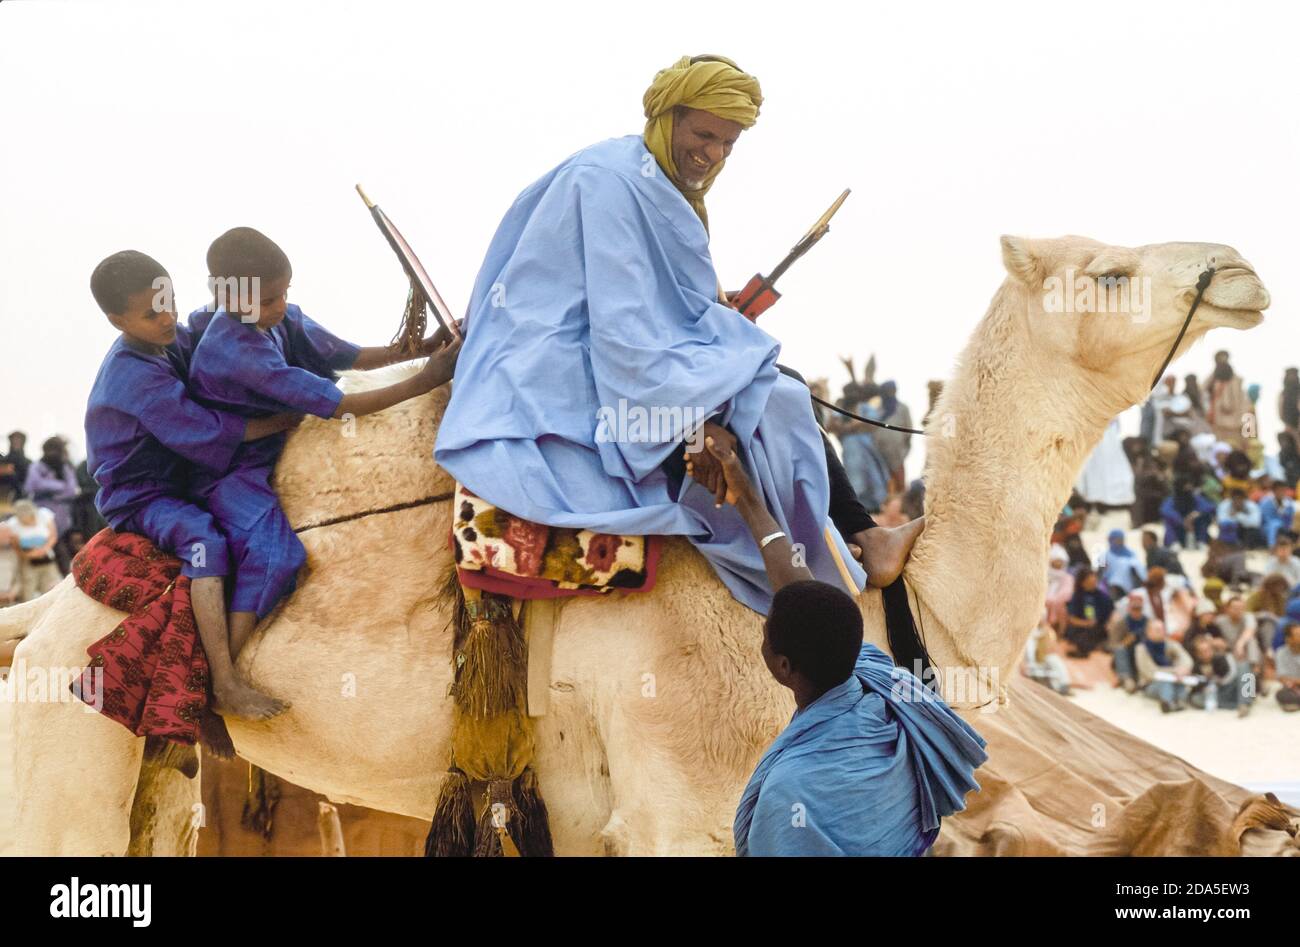 Afrique, Mali, Essakane, près de Tombouctou. Tuareg homme avec deux petits garçons sur son chameau saluant un ami. Festival dans le désert, Festival au désert 2005 Banque D'Images